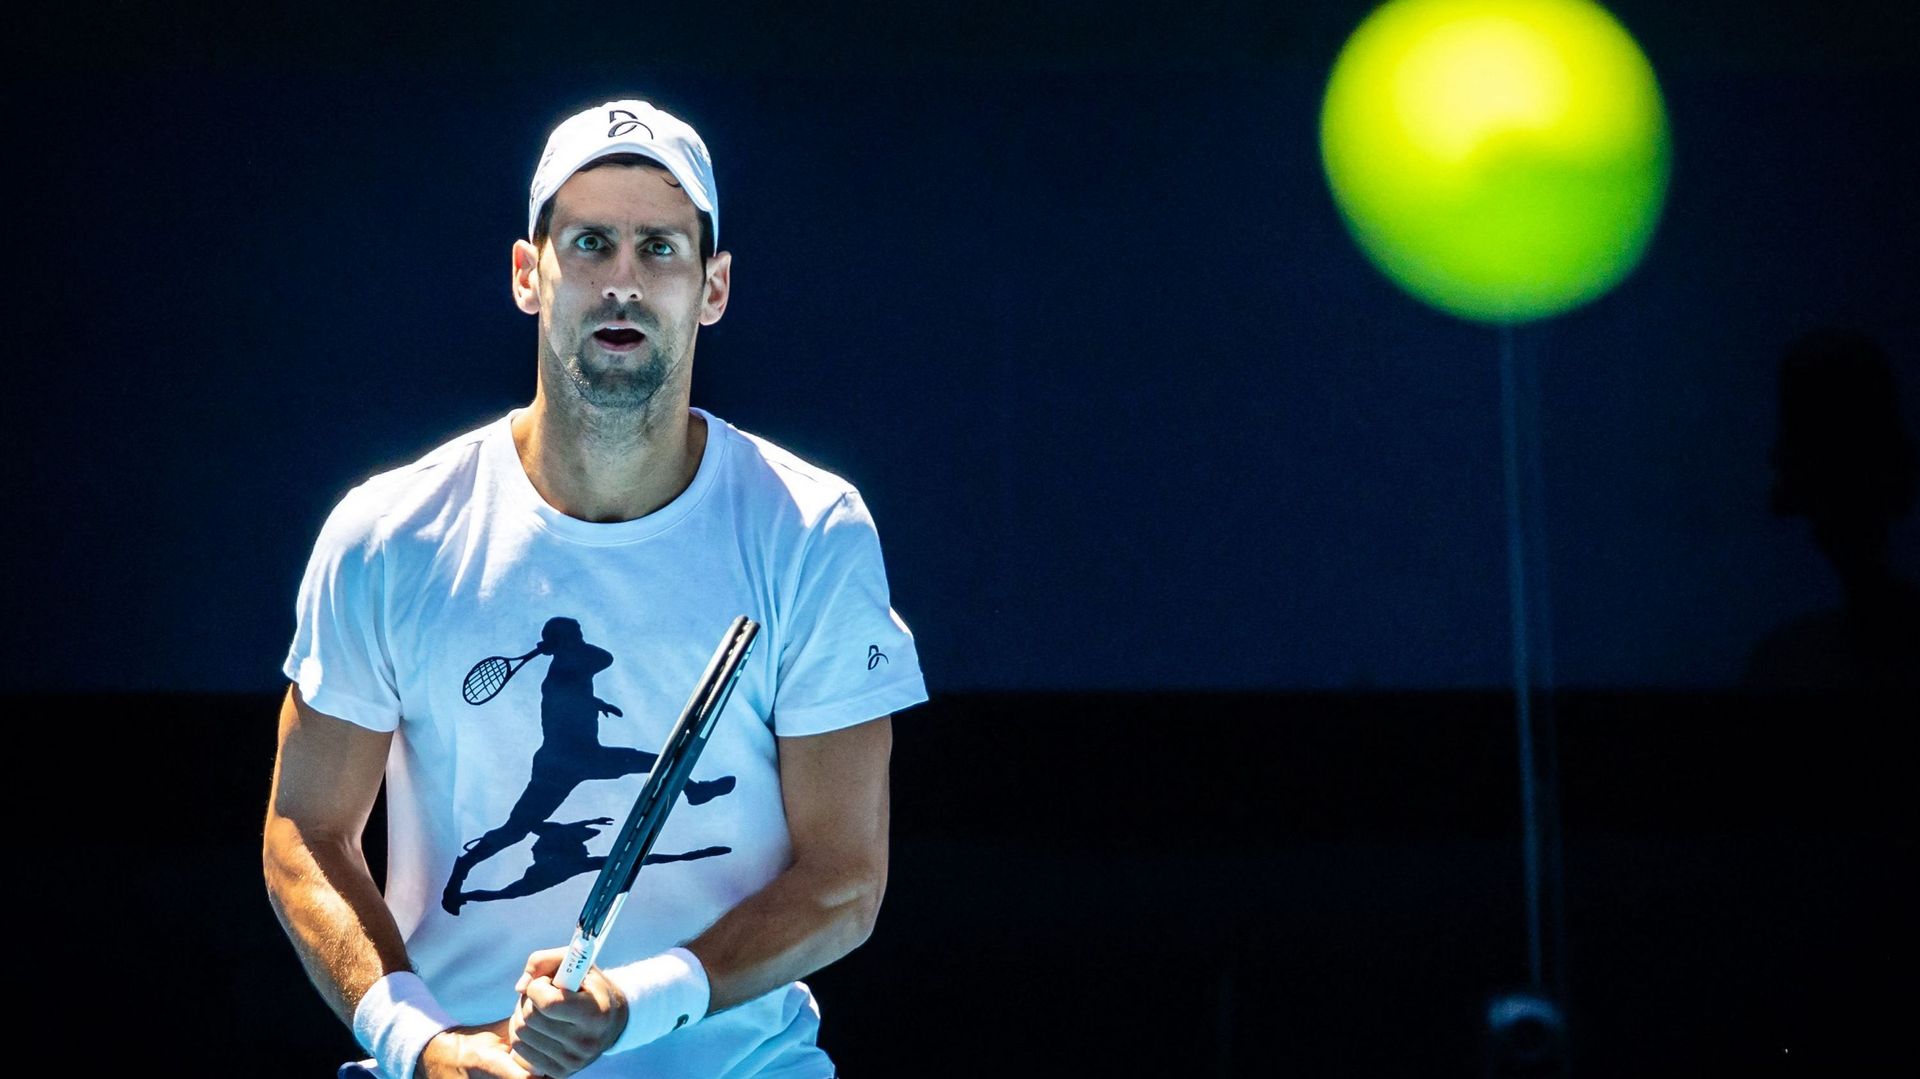 Novak Djokovic, qui fait son retour à l’Open d’Australie (16-29 janvier) en tant que tête de série N.4, a été épargné jeudi par le tirage au sort, plus en tout cas que ses principaux adversaires et notamment Rafael Nadal pourtant tête de série N.1.